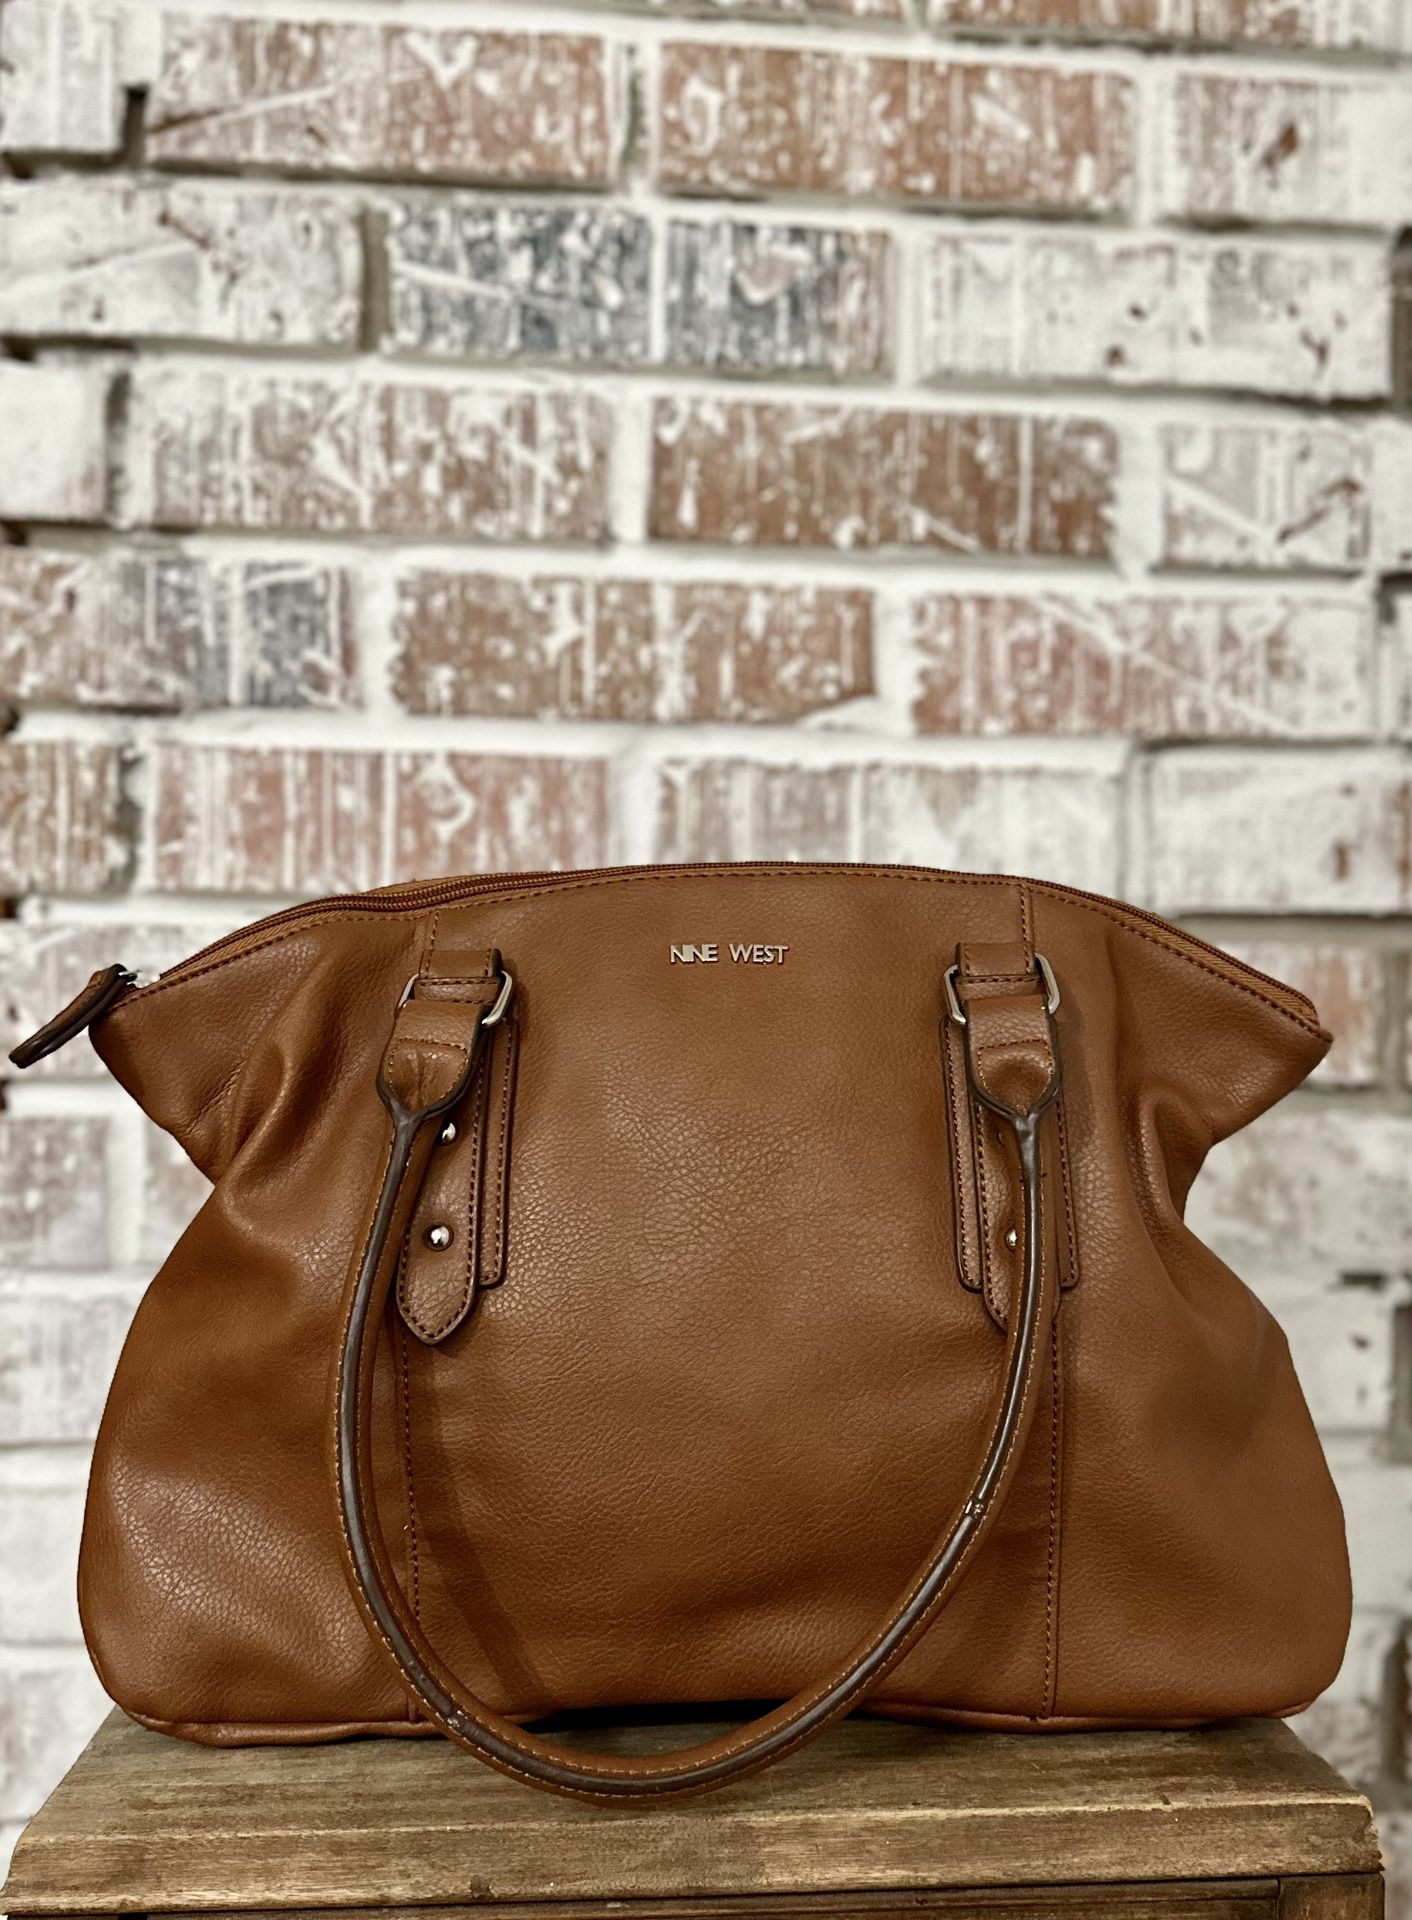 Nine West Shoulder Bag Brown Zip Up 15” With Pockets Purse Tan Interior